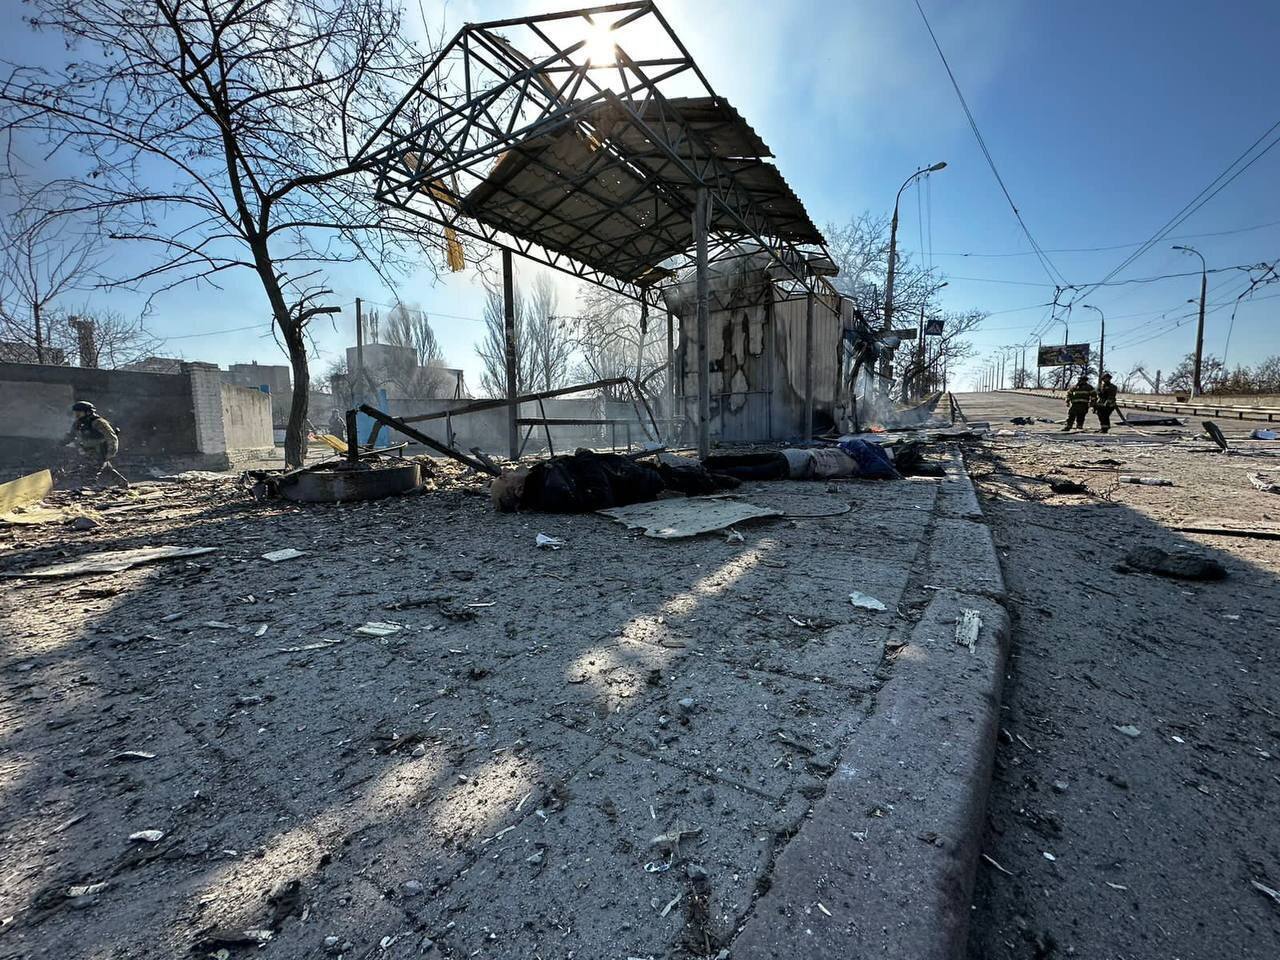 "Удар возмездия": у Шойгу цинично высказались о ракетной атаке на Украину, вследствие которой погибли мирные жители